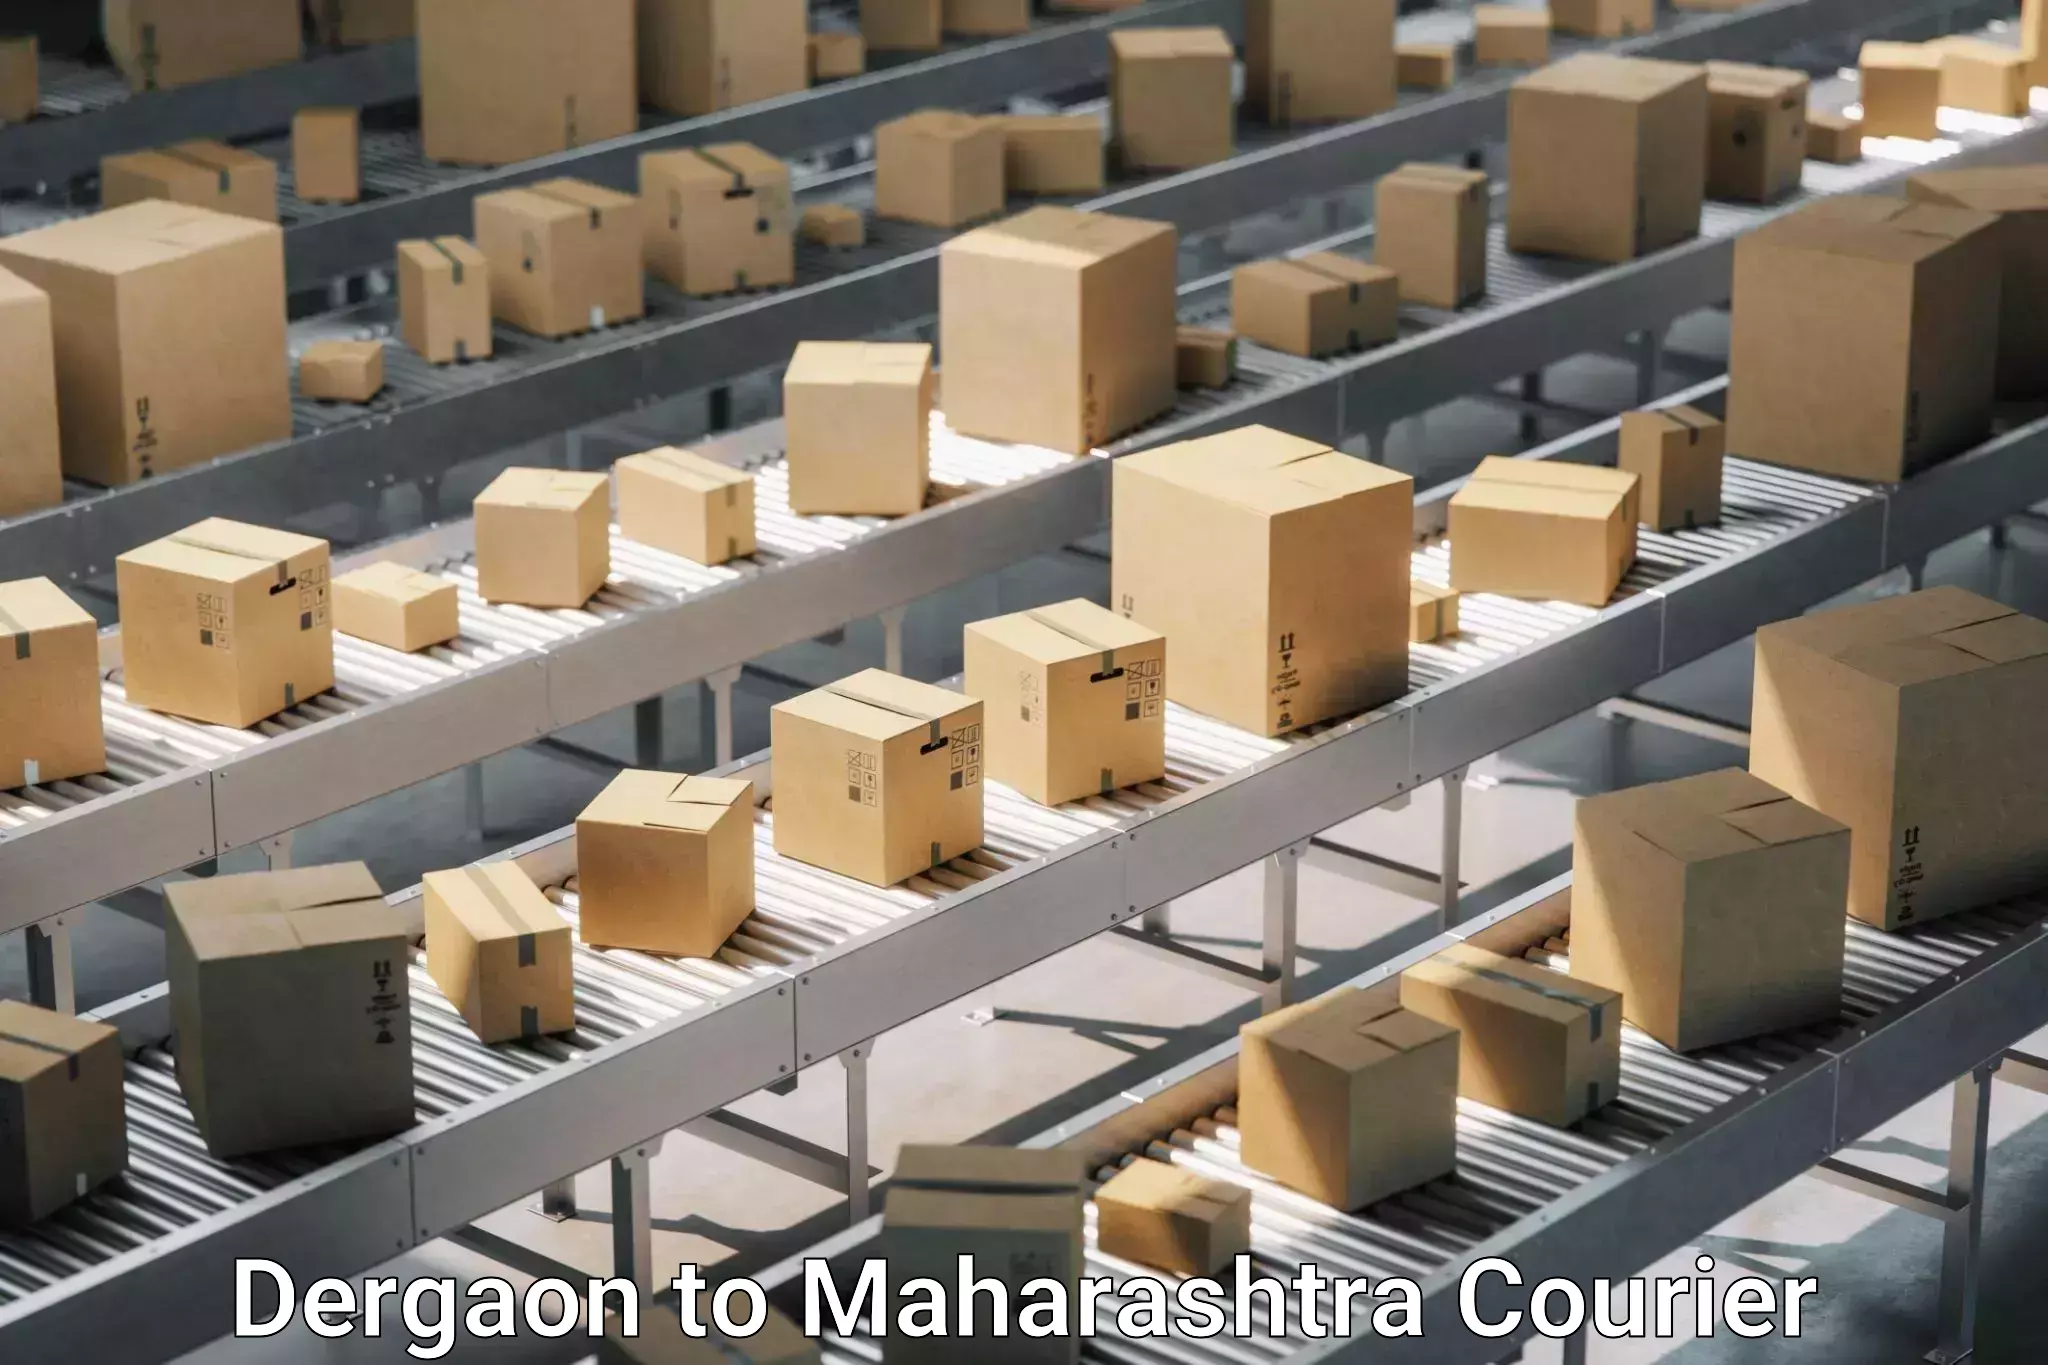 Professional moving company Dergaon to Walchandnagar